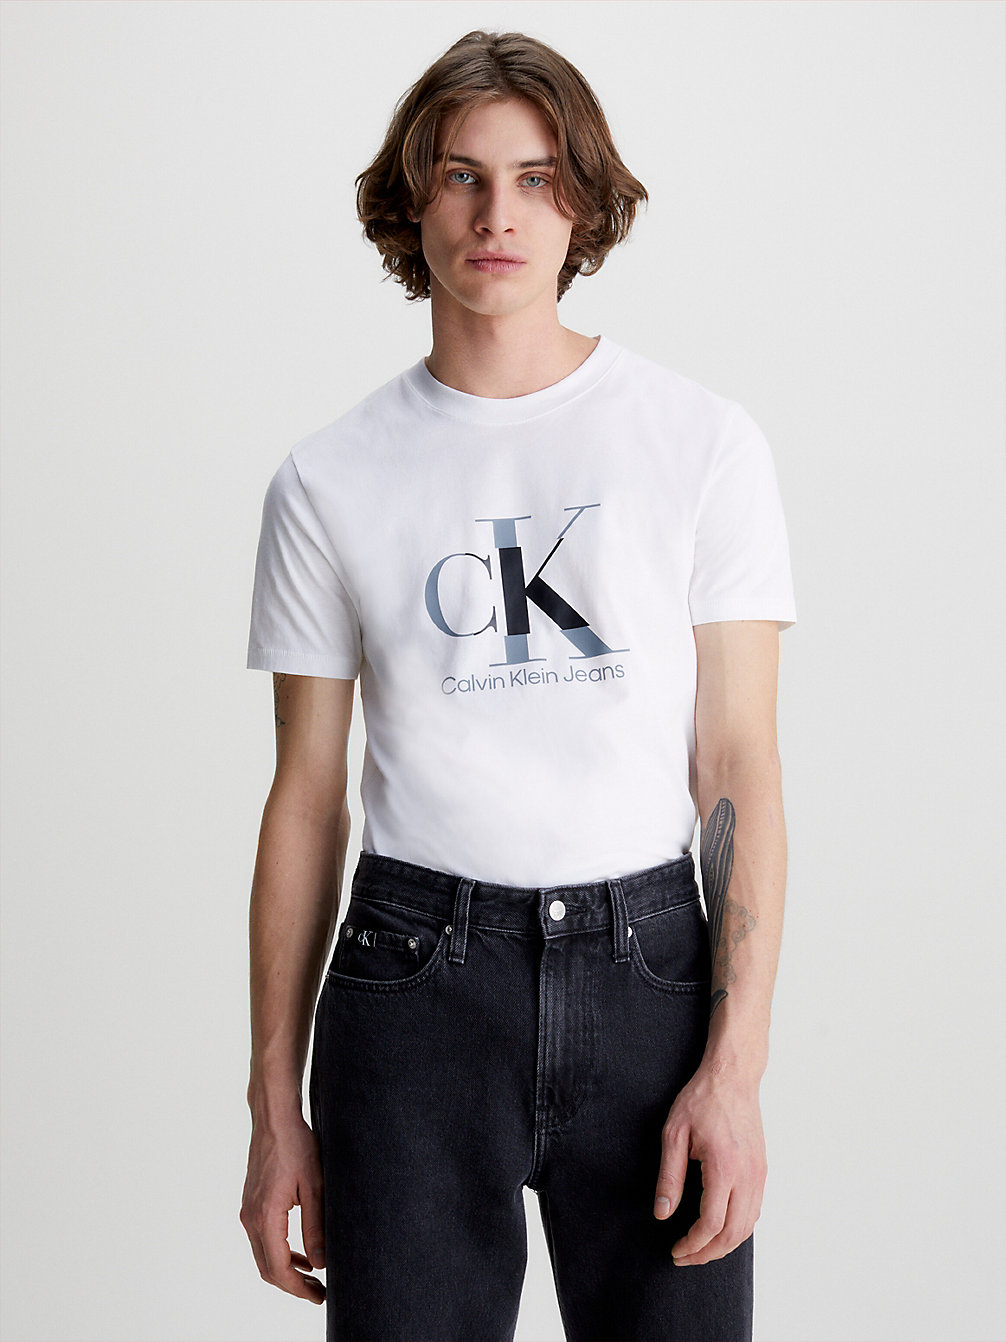 BRIGHT WHITE > Wąski T-Shirt Z Monogramem > undefined Mężczyźni - Calvin Klein